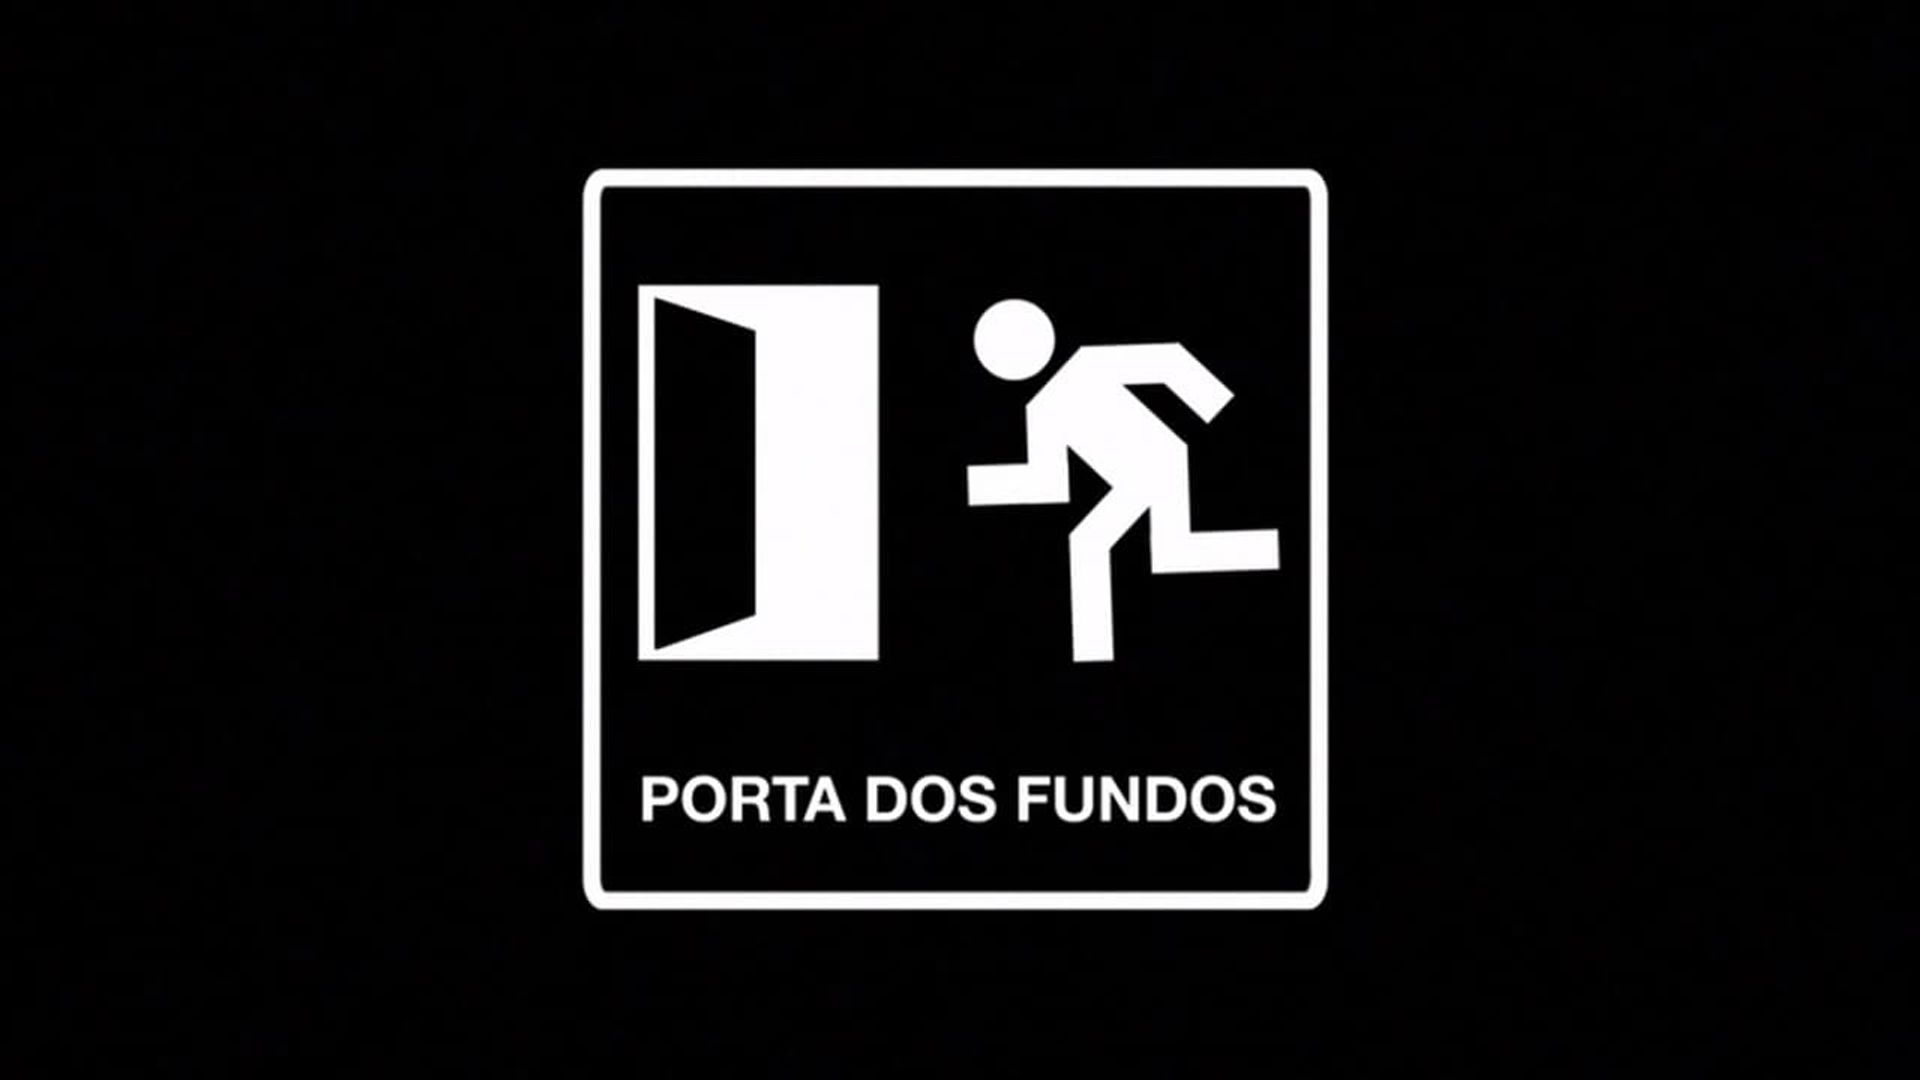 Porta dos Fundos background